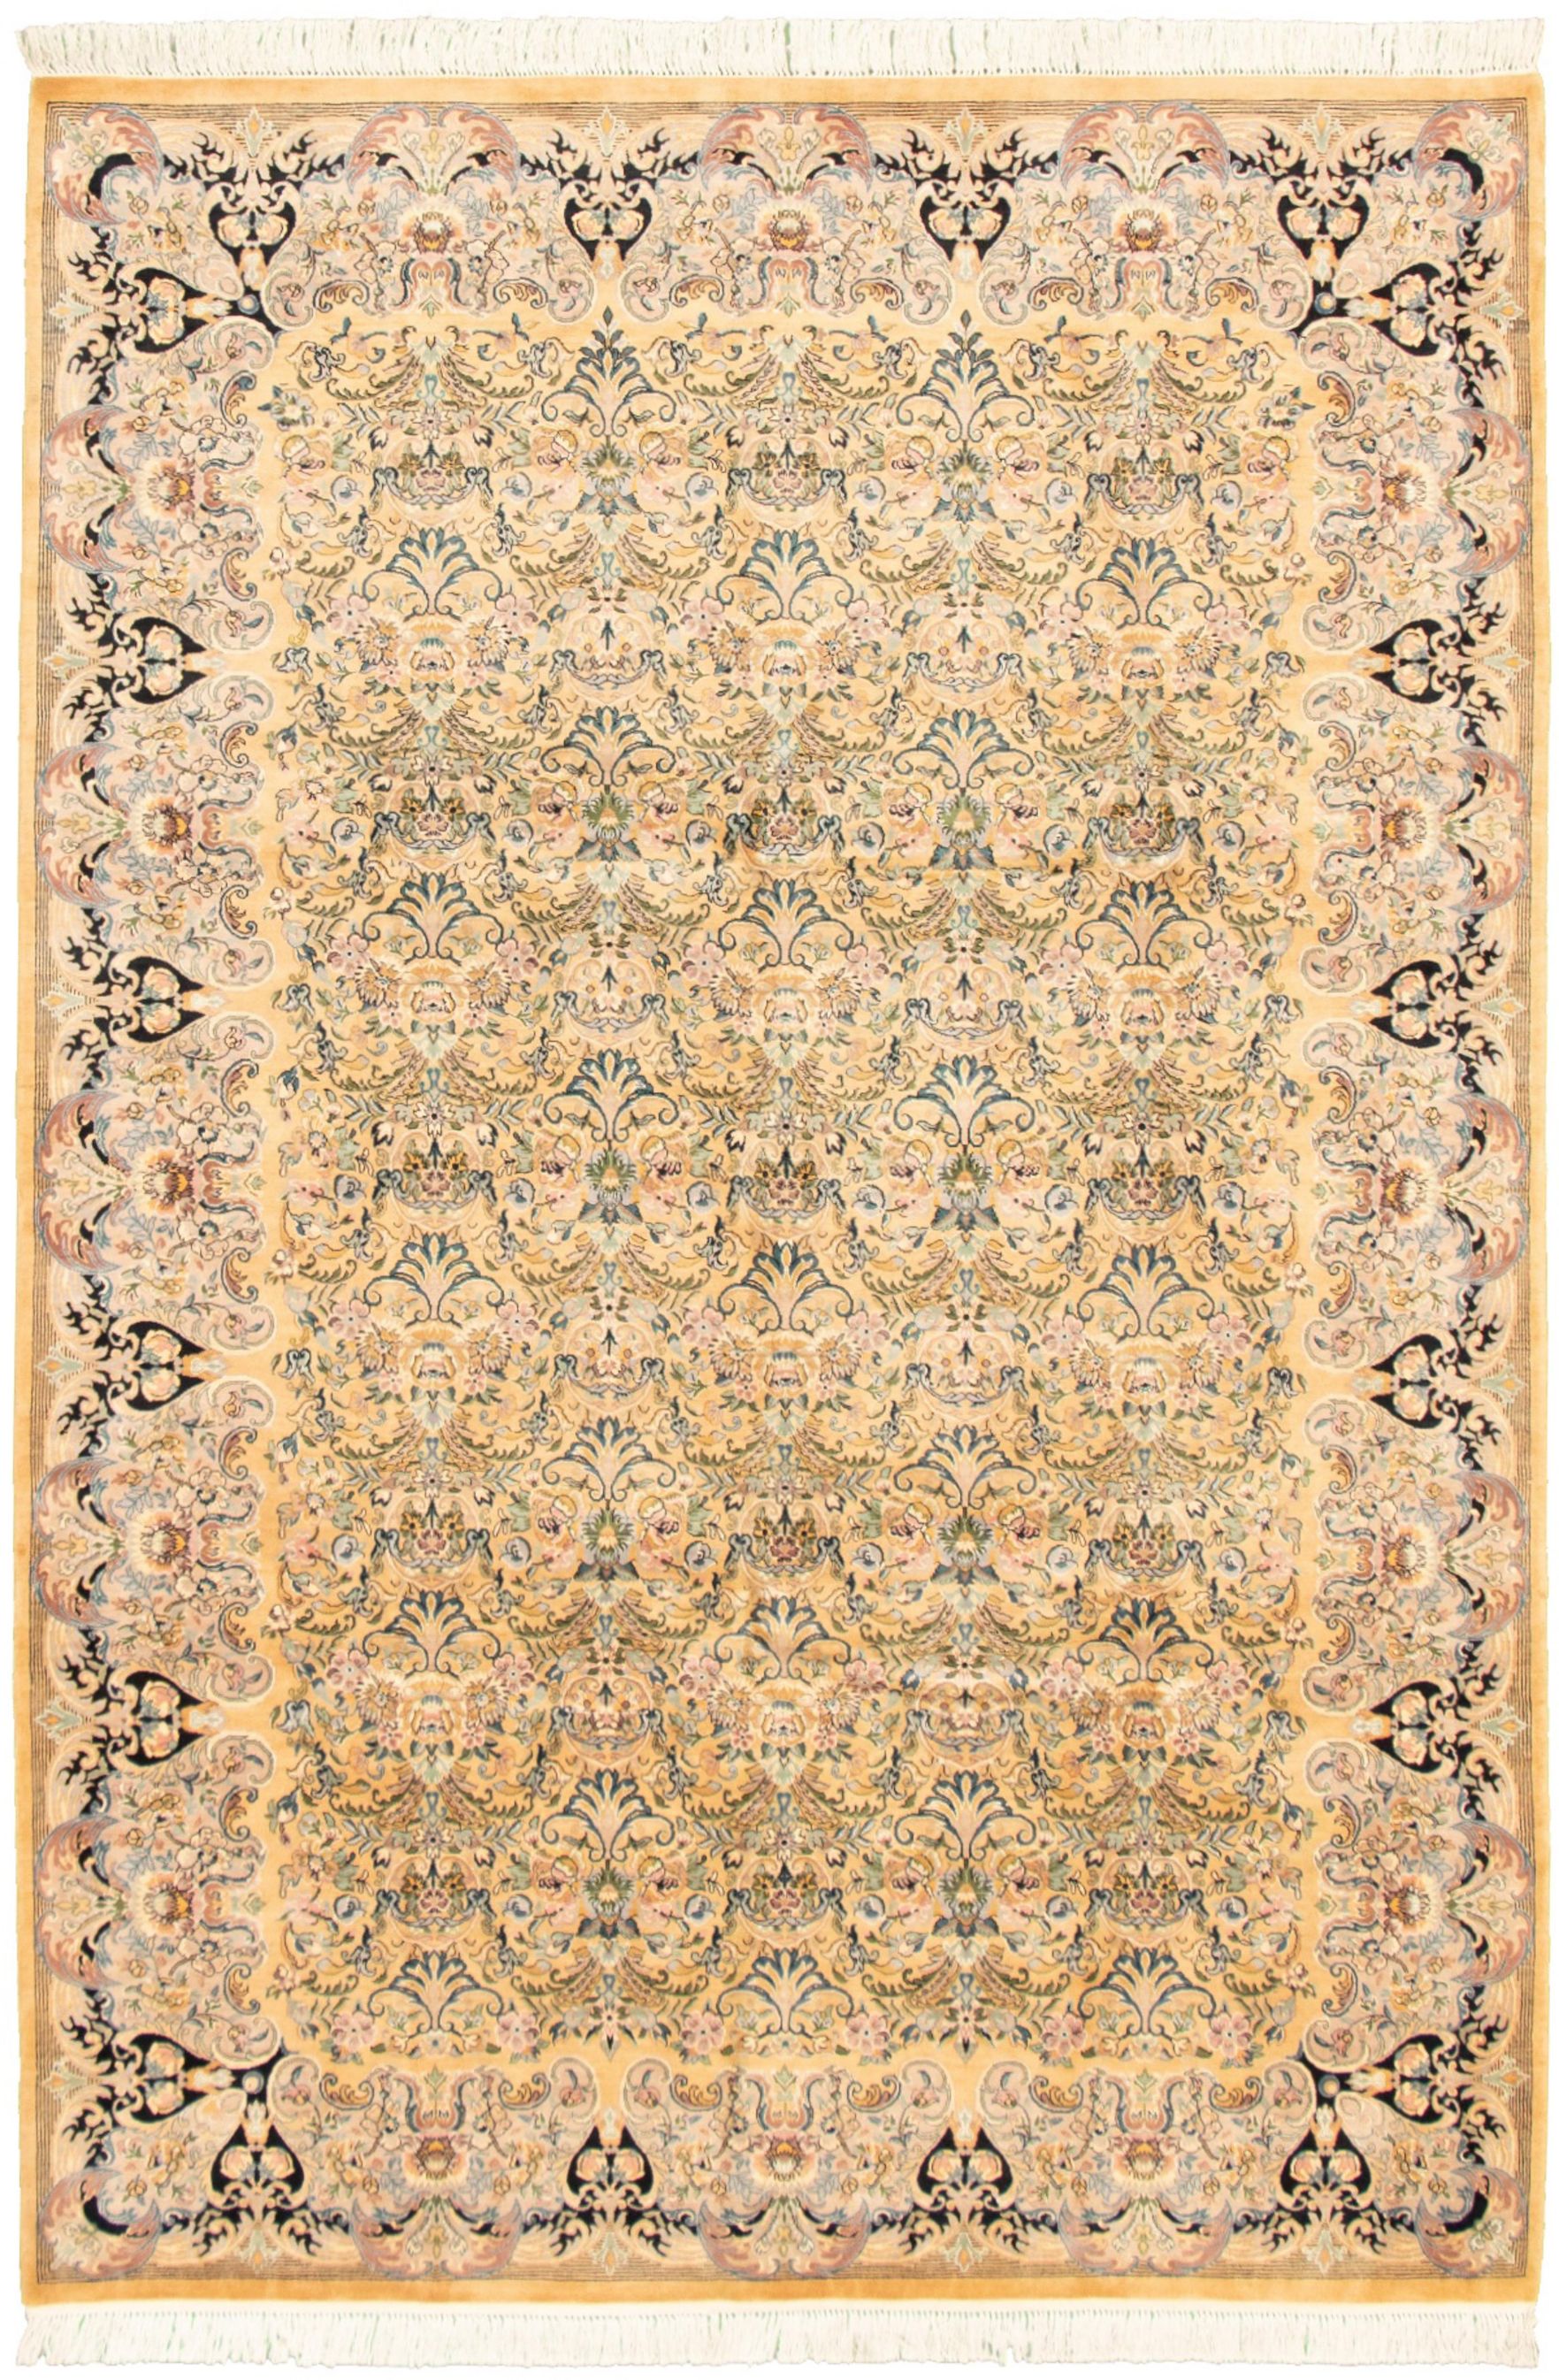 Hand-knotted Pako Persian 18/20 Khaki Wool Rug 6'8" x 9'9" Size: 6'8" x 9'9"  